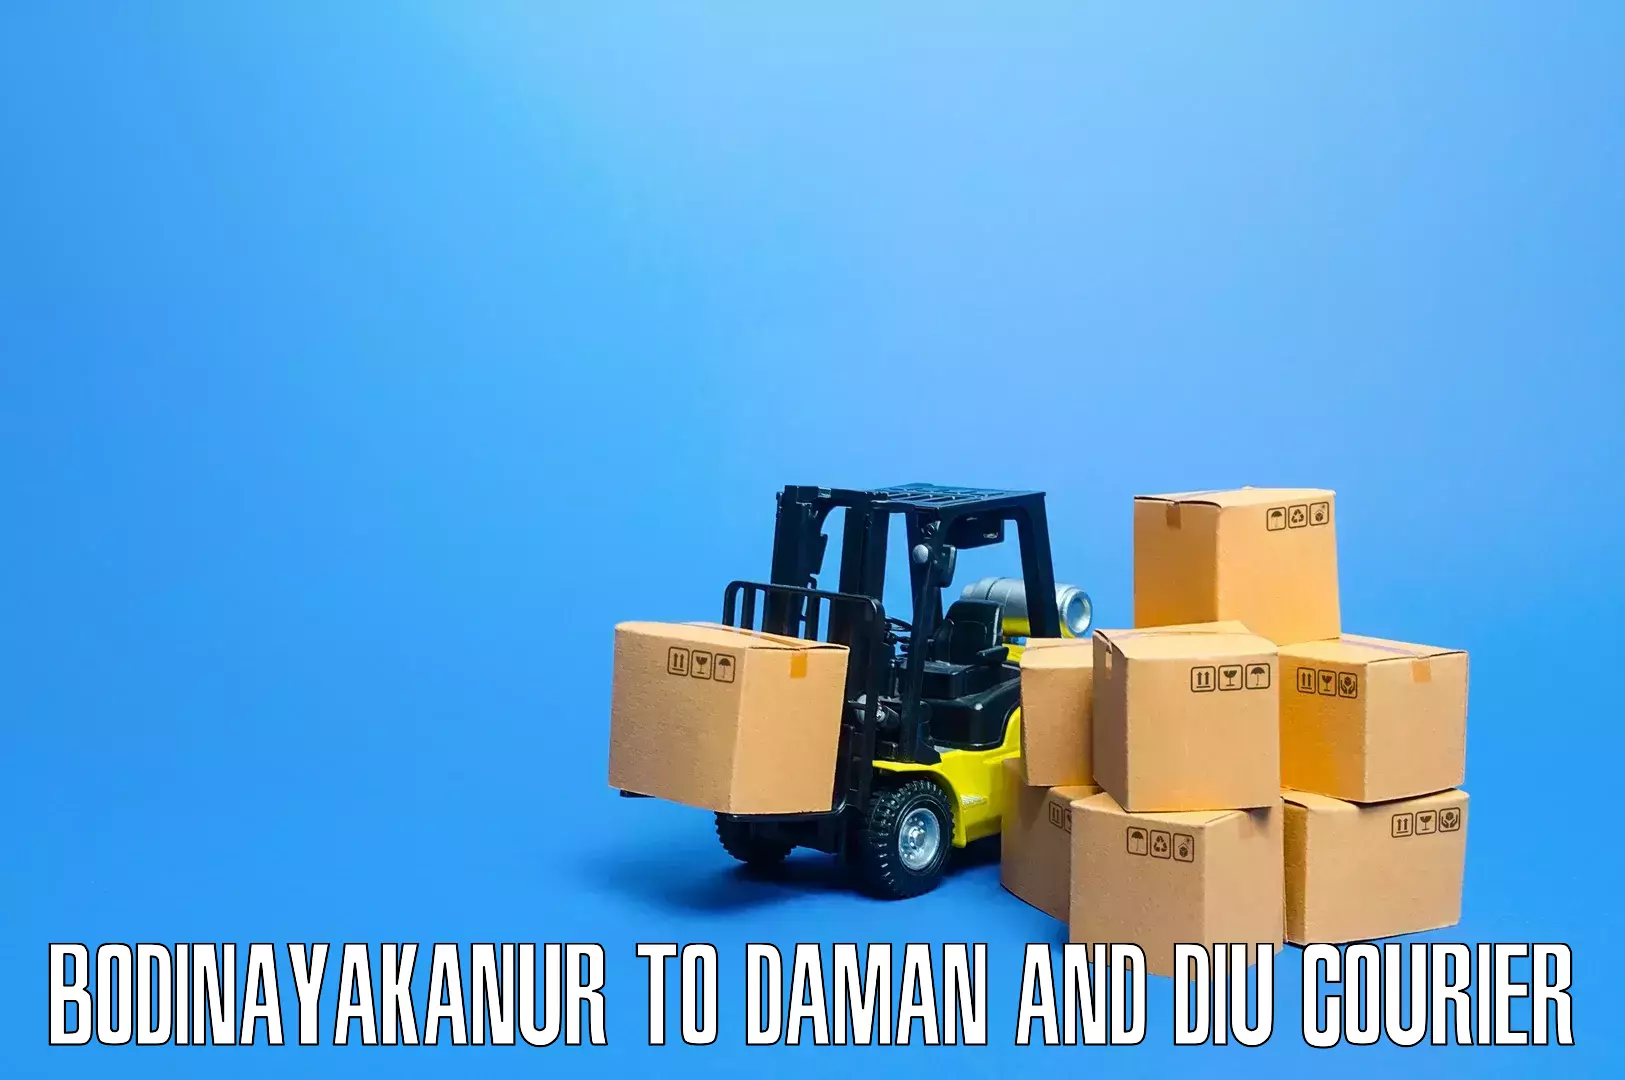 Personalized furniture moving Bodinayakanur to Daman